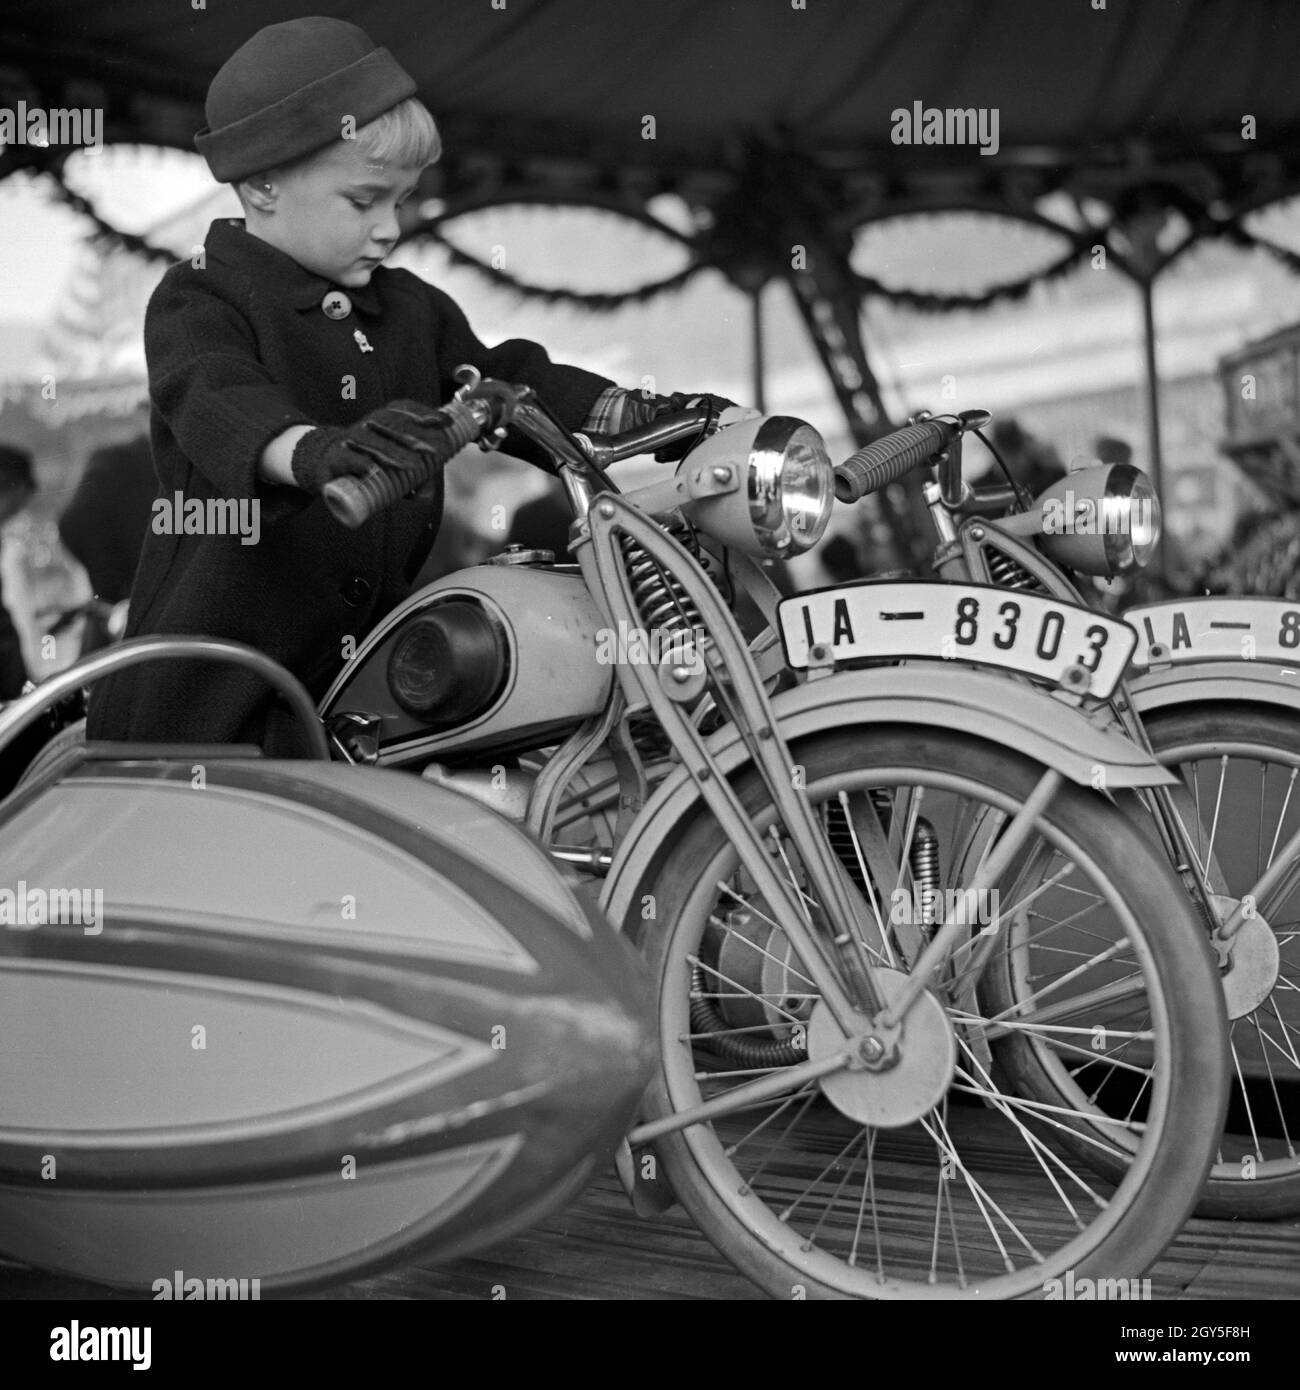 Ein kleiner Junge auf dem Motorrad eines Kinderkarussels auf dem Weihnachtsmarkt, Deutschland 1930er Jahre. Un ragazzino in sella alla moto di una giostra kiddy presso il mercato di natale, Germania 1930s. Foto Stock